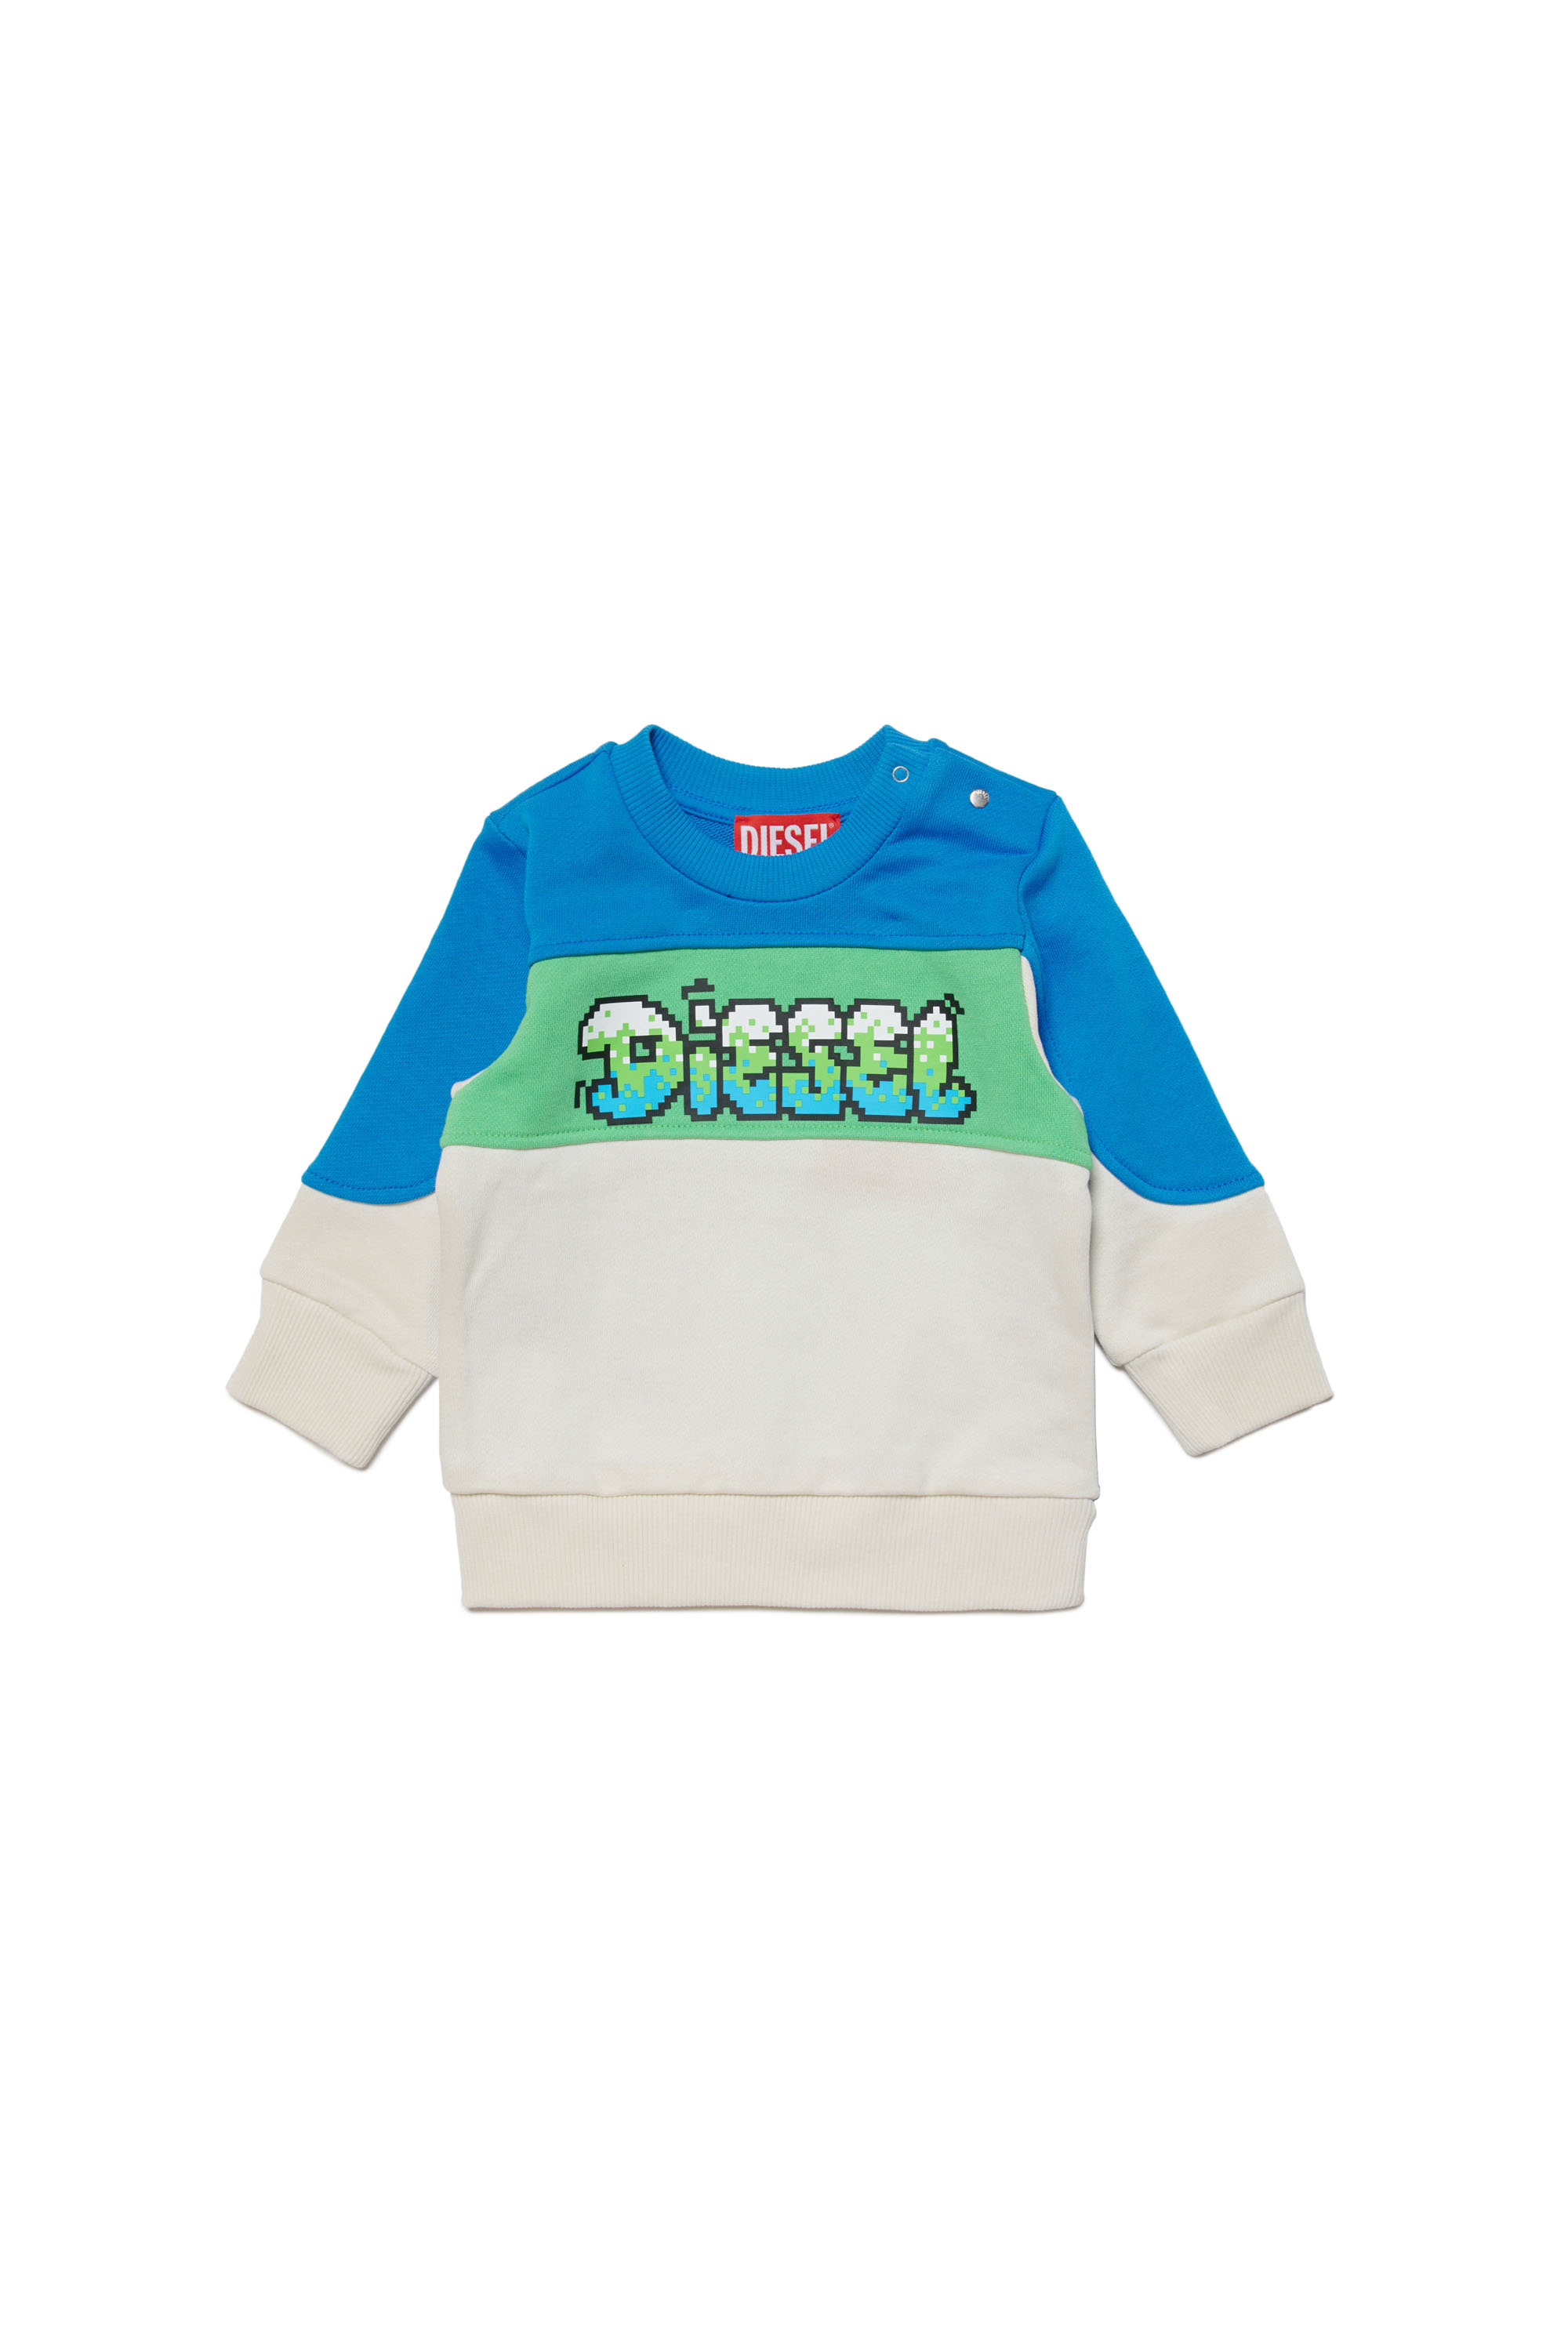 Diesel - Sweat-shirt color-block avec logo pixélisé - Pull Cotton - Homme - Polychrome